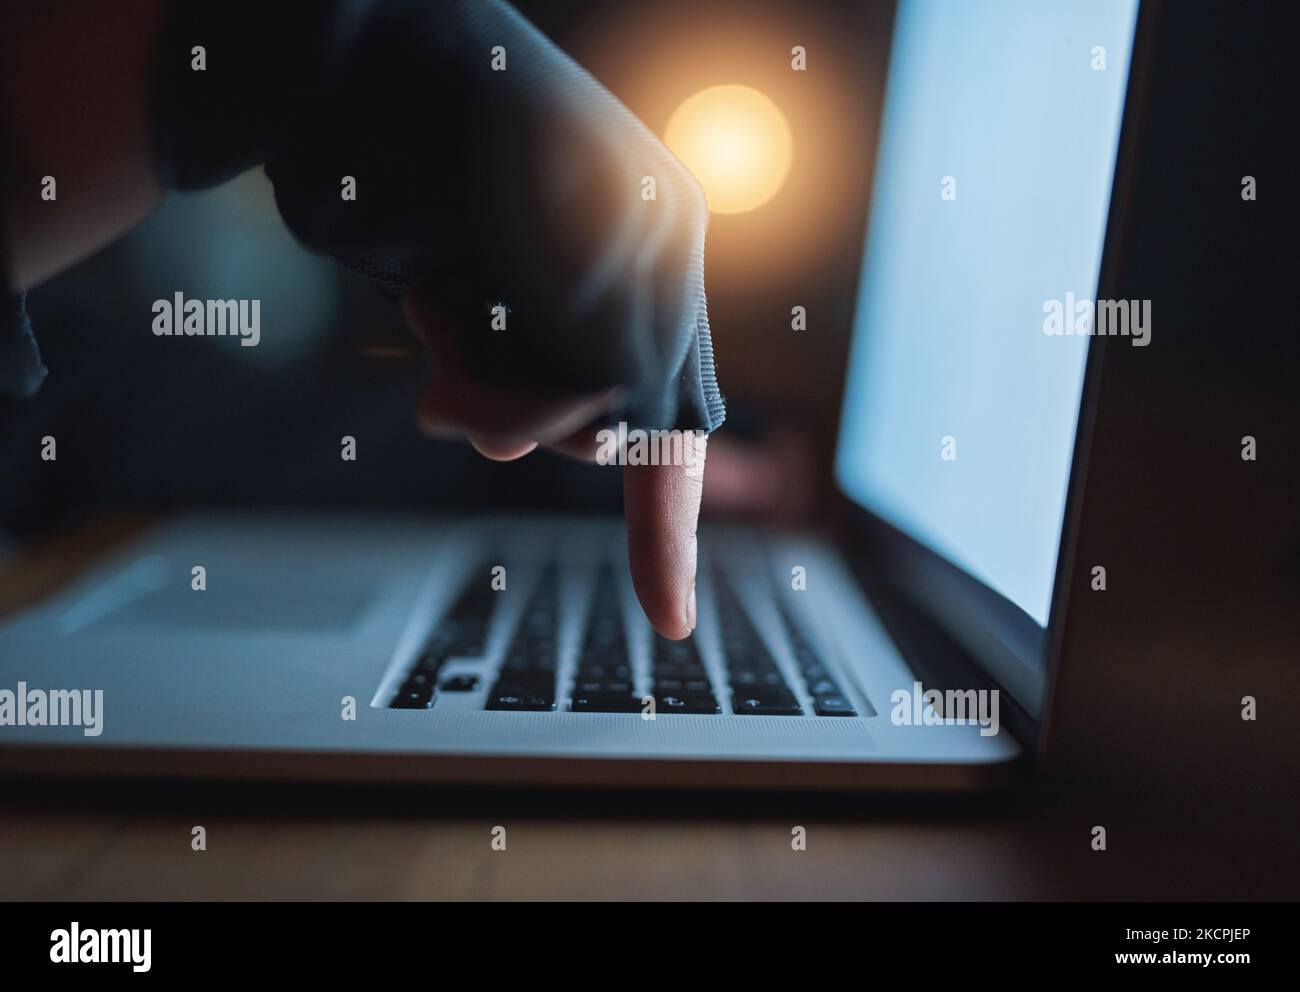 Faites attention à ce que vous partagez en ligne. Un pirate méconnaissable utilisant un ordinateur portable dans l'obscurité. Banque D'Images